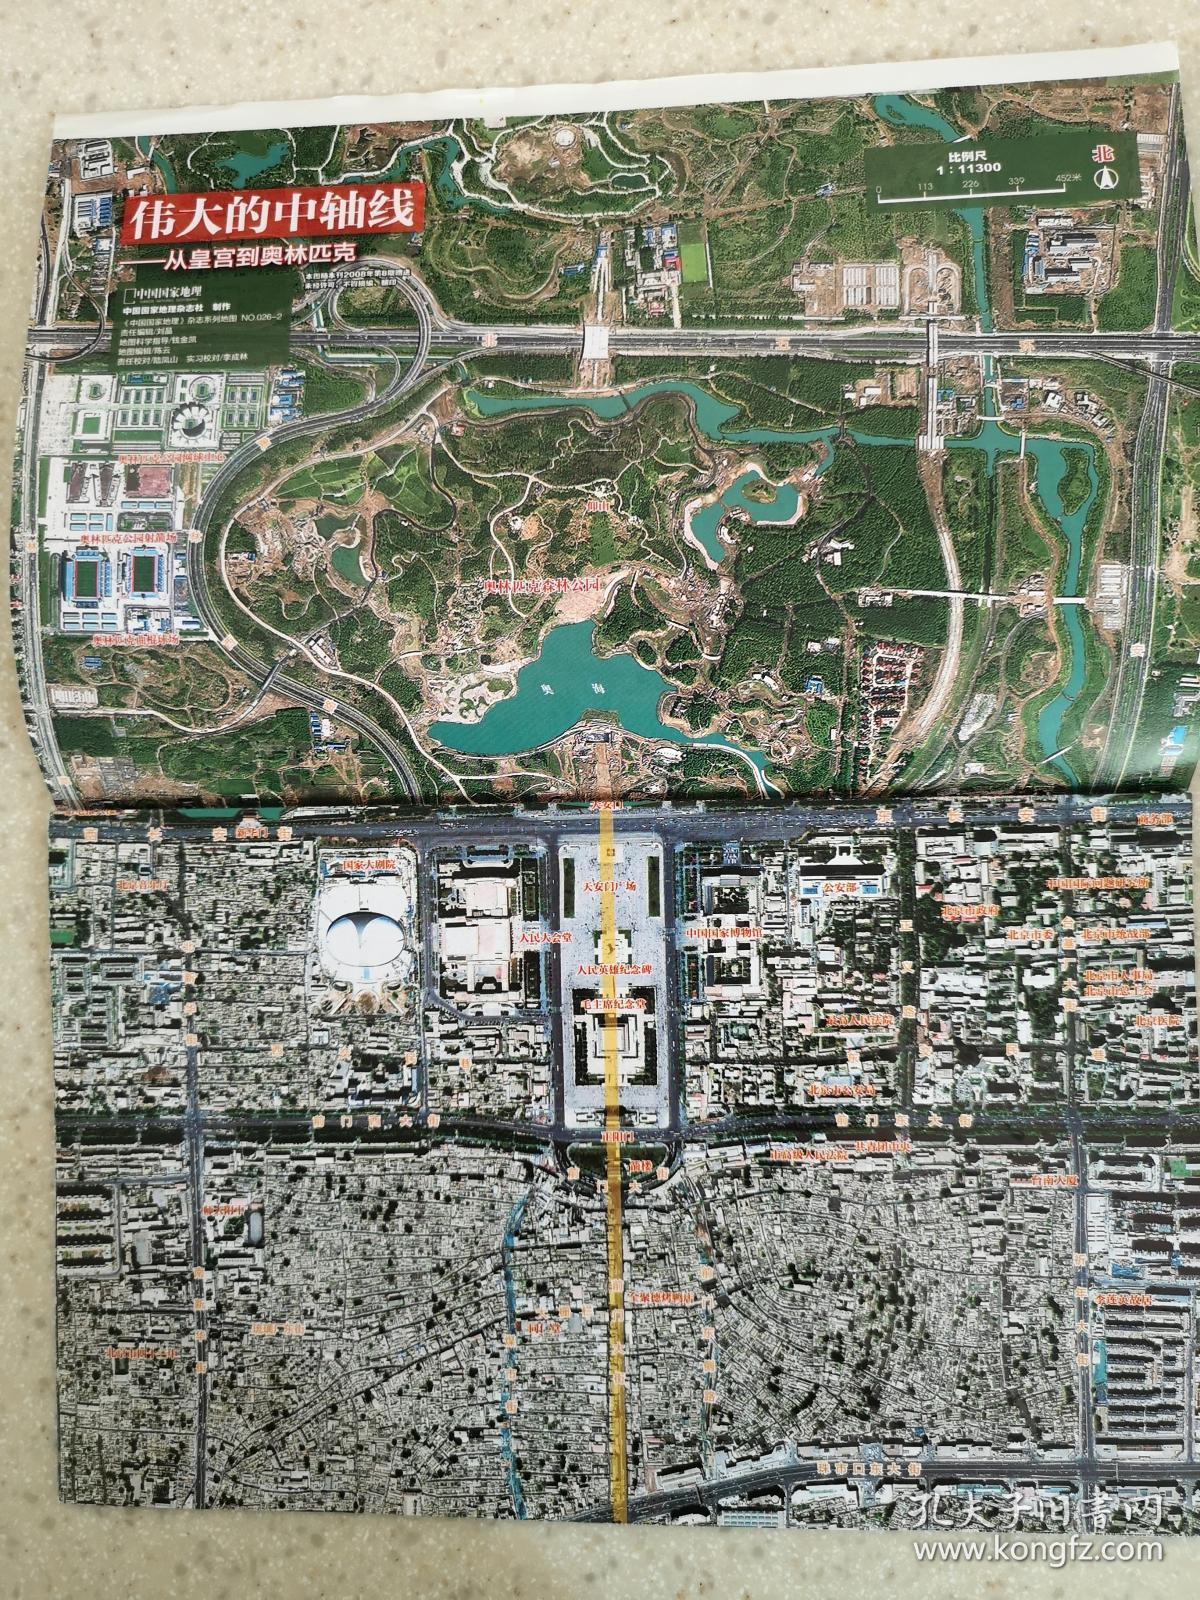 7期(河南的中国史地图).8期(北京1200_1600 竖版 竖屏